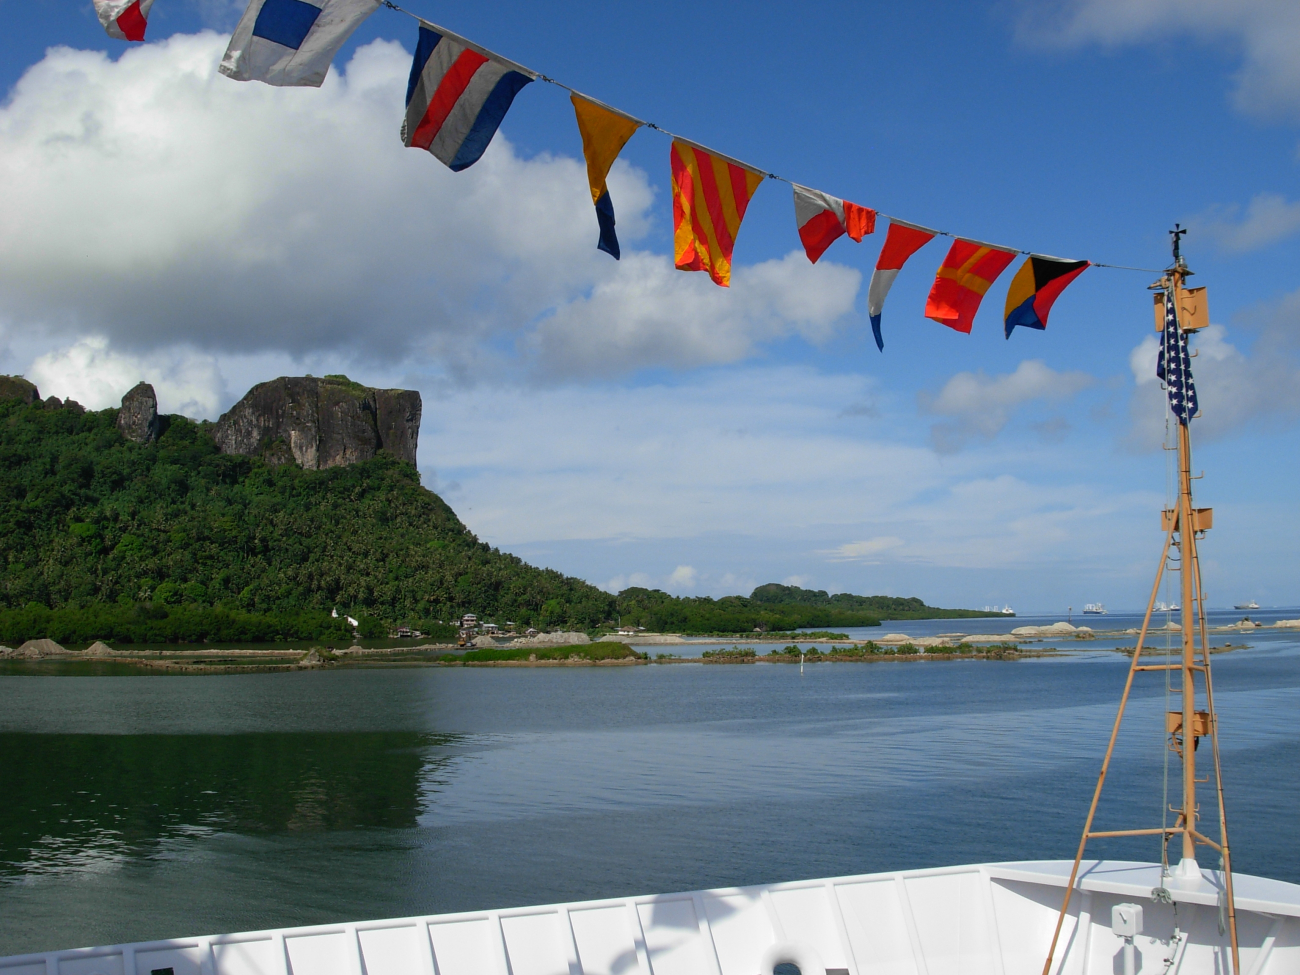 Bow of the  NOAA Ship KA'IMIMOANA (R333) tied up at Pohnpei, Chuuk